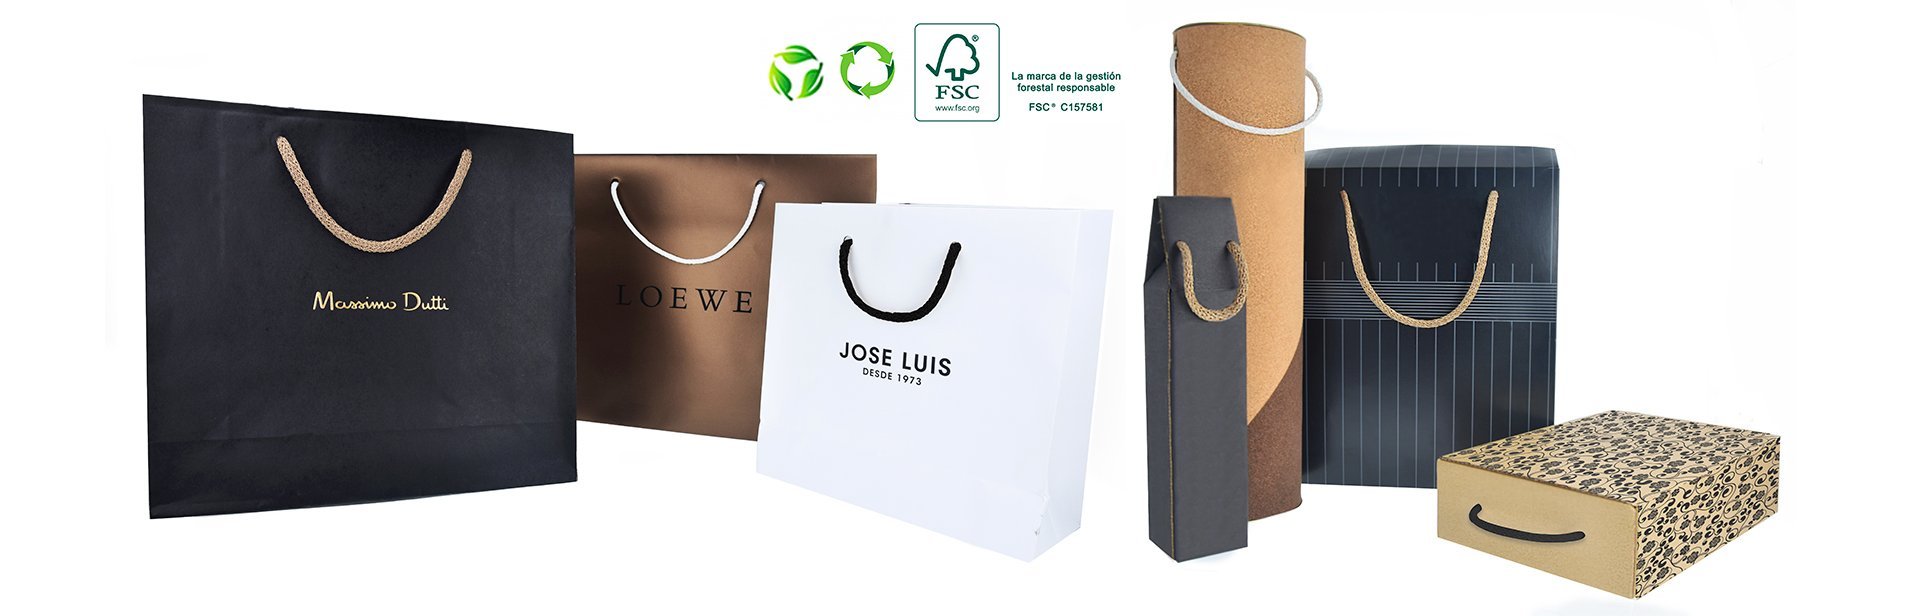 Cordones de papel certificados FSC®: apoyamos la gestión forestal responsable